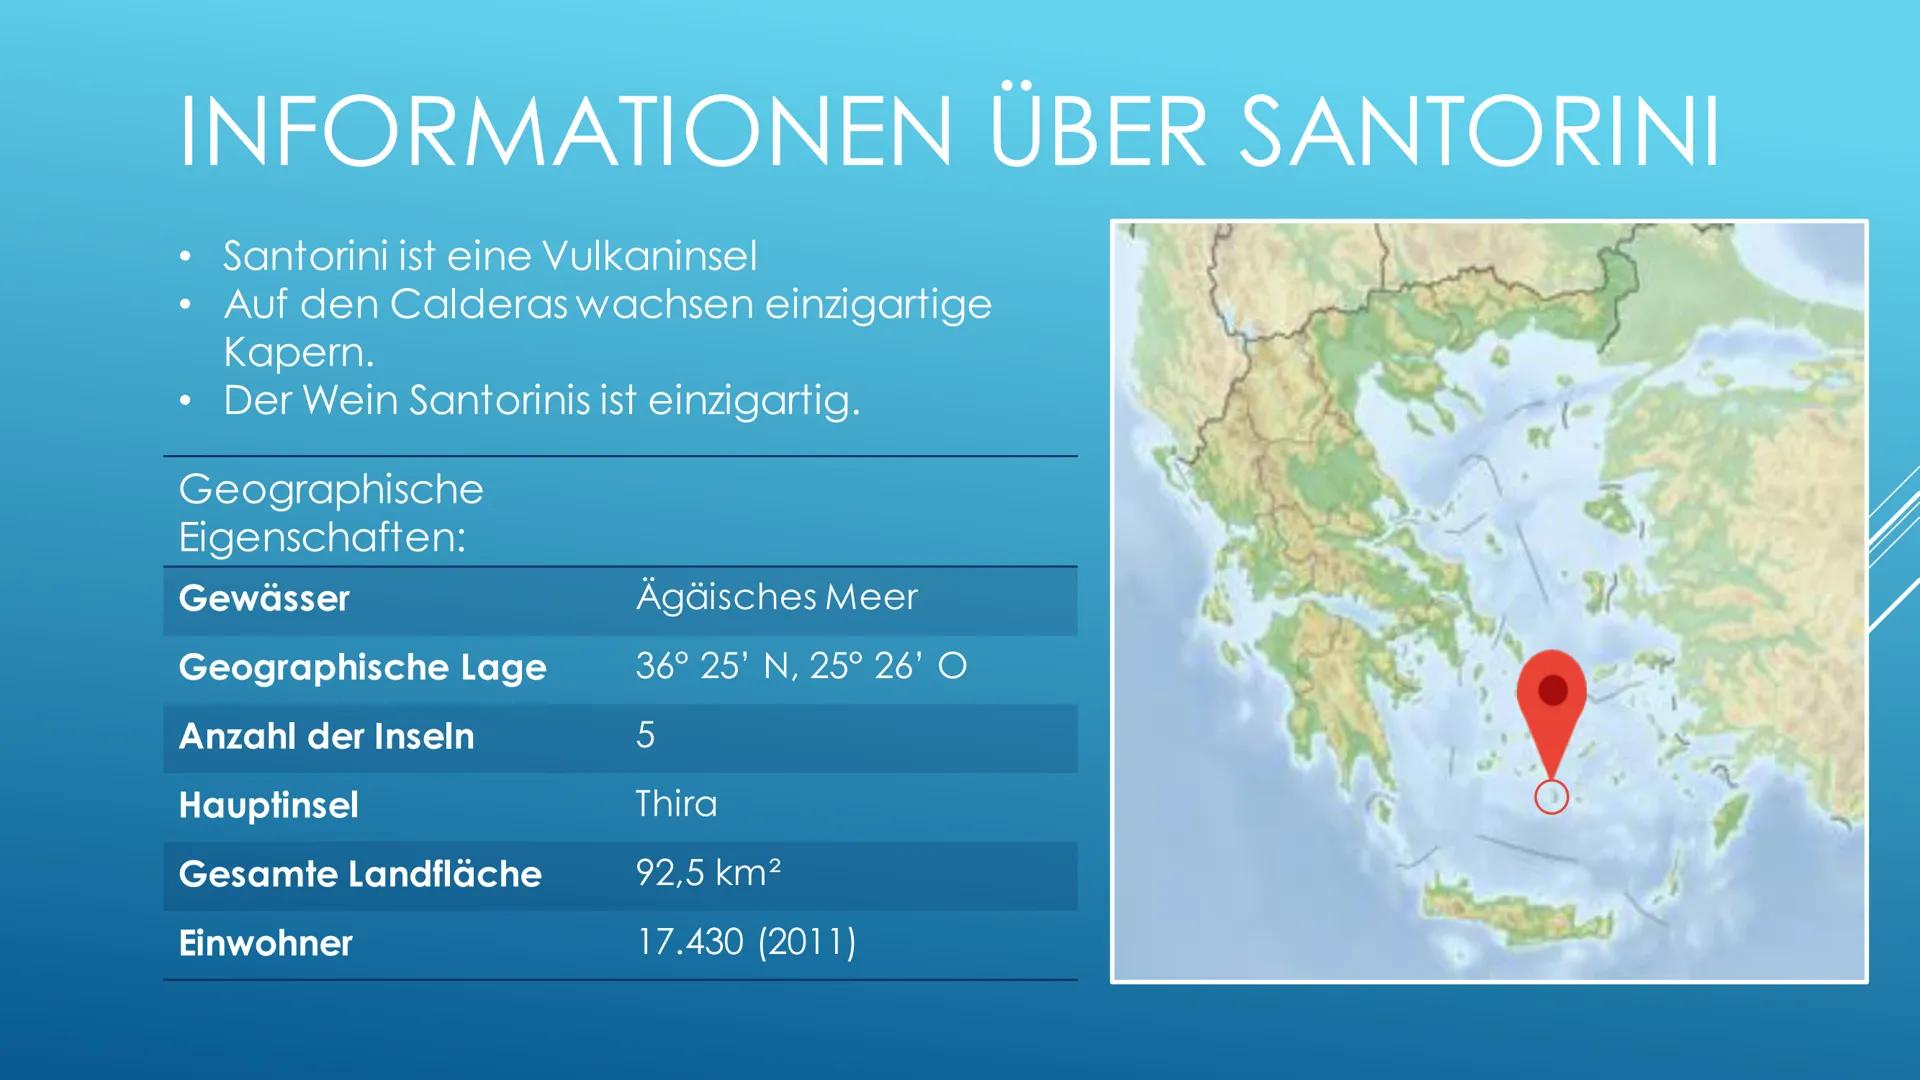 SANTORINI
eine wahnsinnig schöne griechische Insel INHALTSVERZEICHNIS
Informationen über Santorini
+ Geographische Eigenschaften
Das Vulkan 